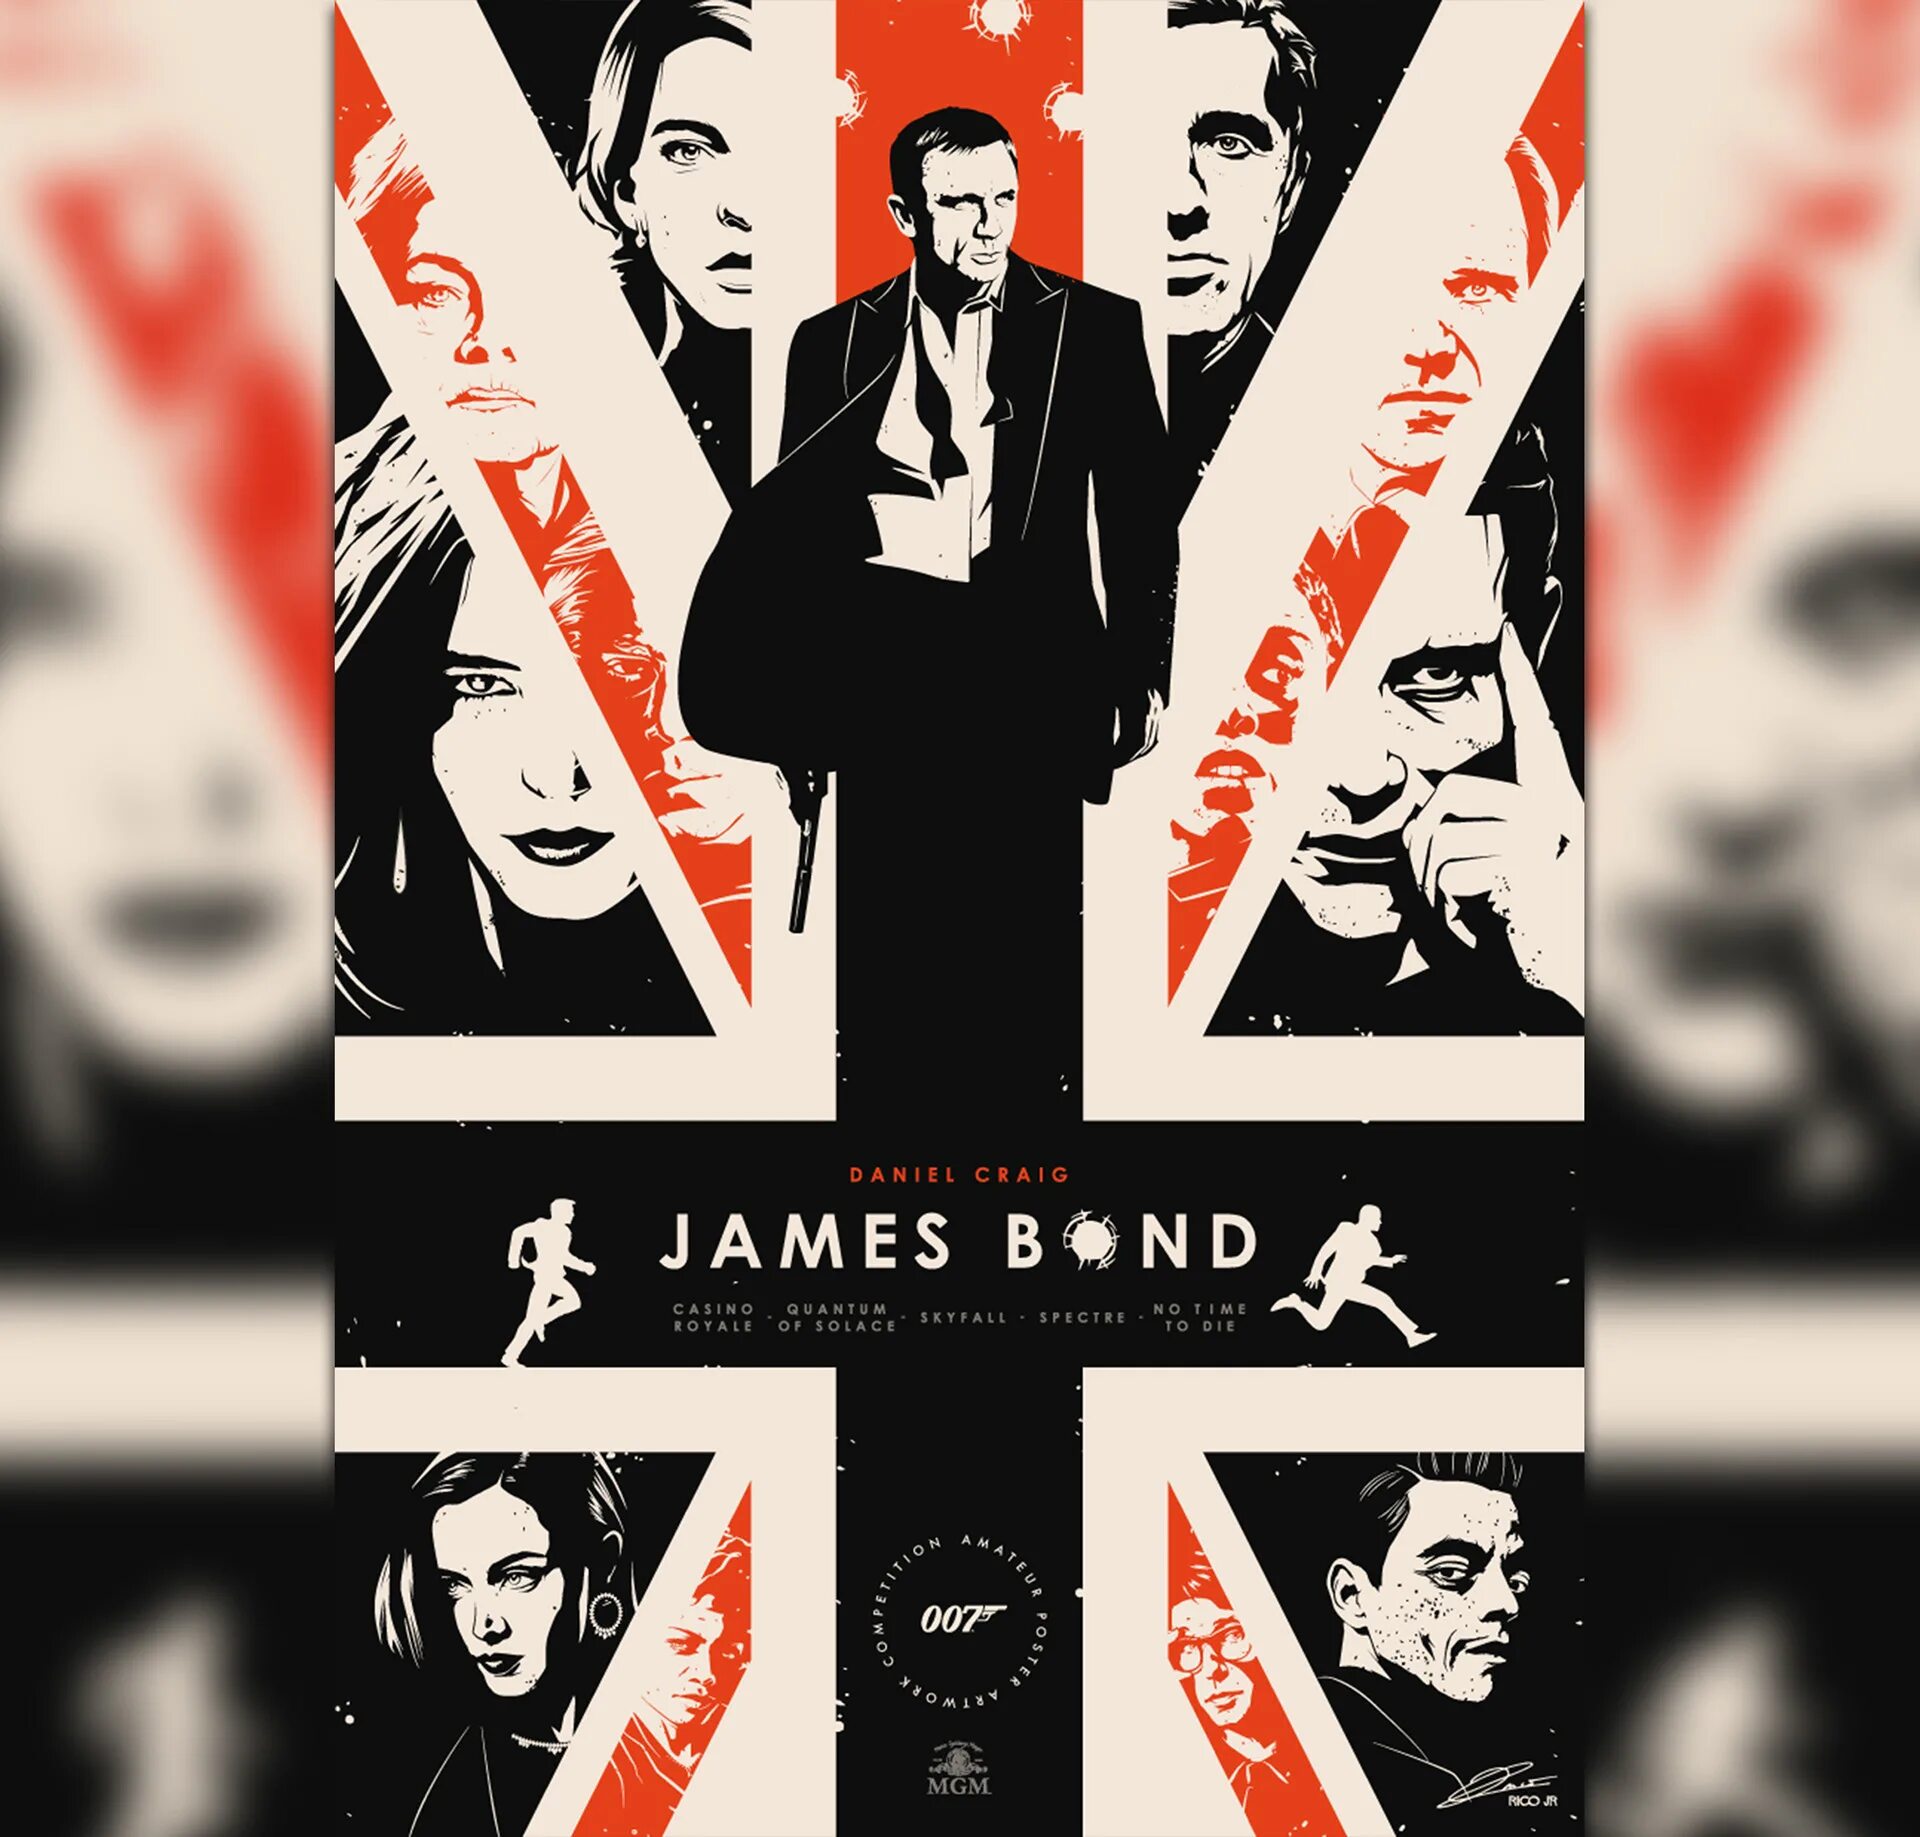 Posters 7. Дэниел Крейг Бонд Постер. Постер в стиле Бонда. Плакат в стиле Джеймса Бонда.